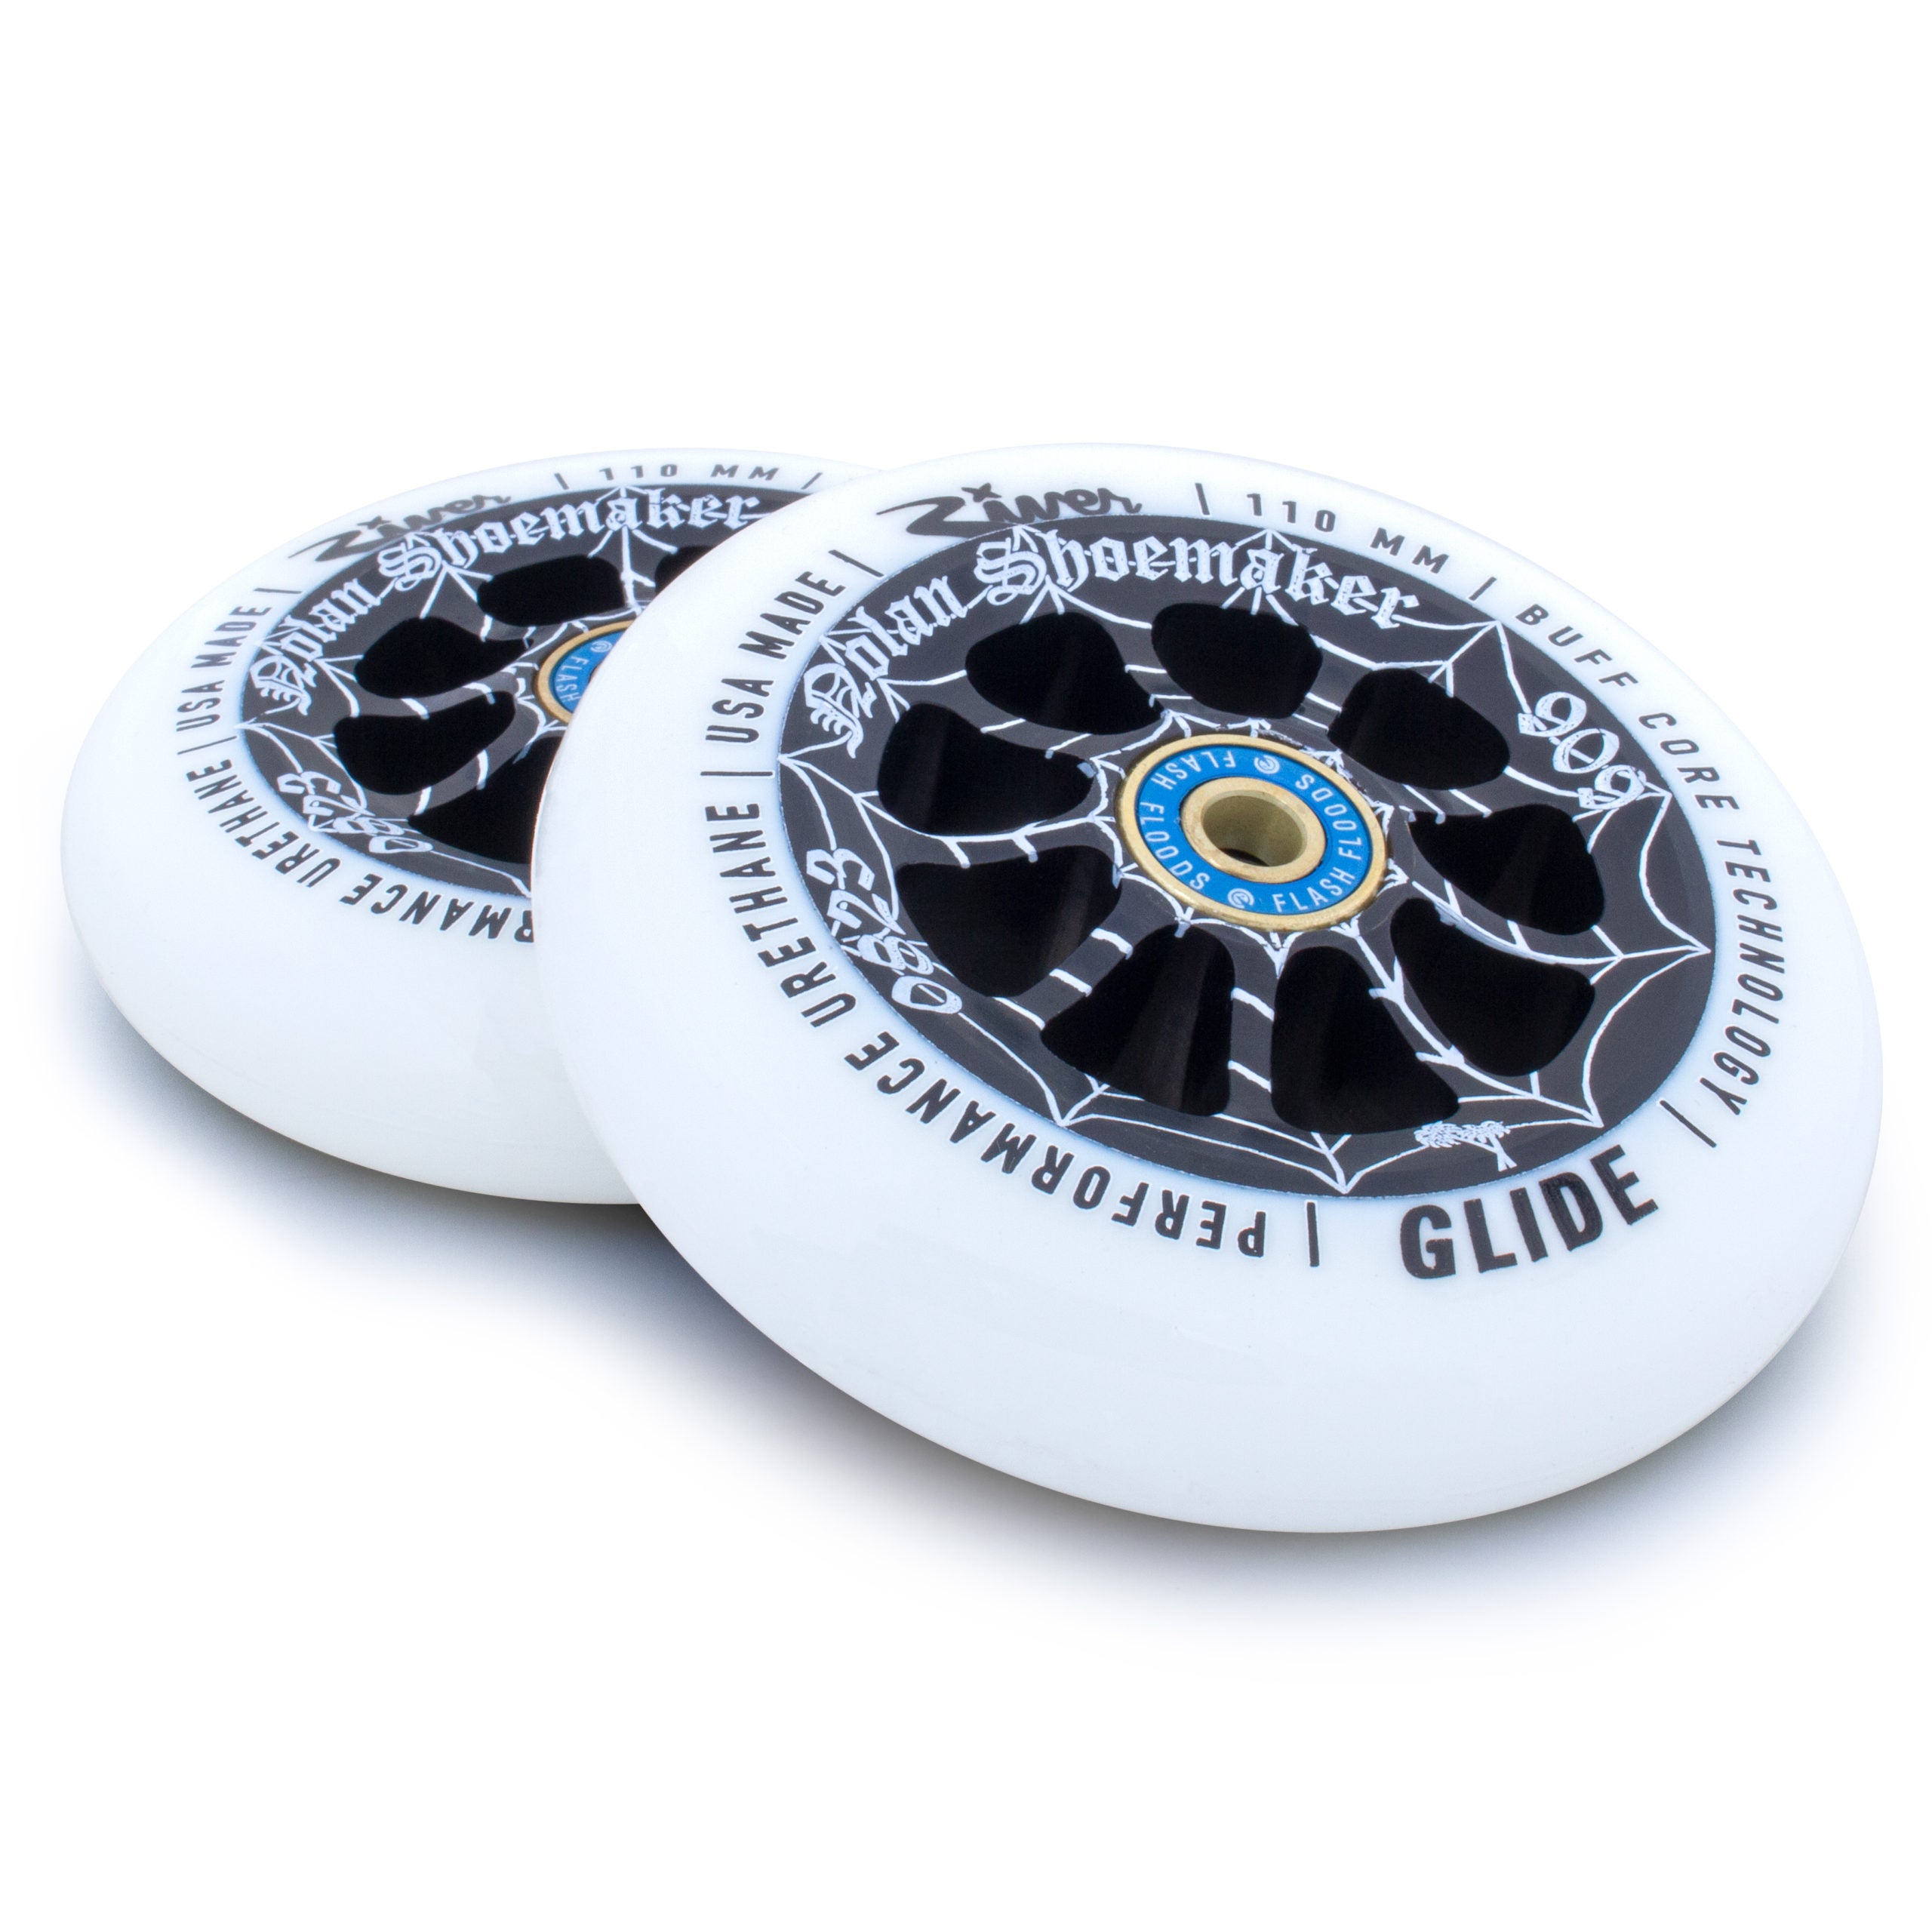 River Wheel Co – 110mm “Cali” Glides Nolan Shoemaker Signature Blanc sur Noir